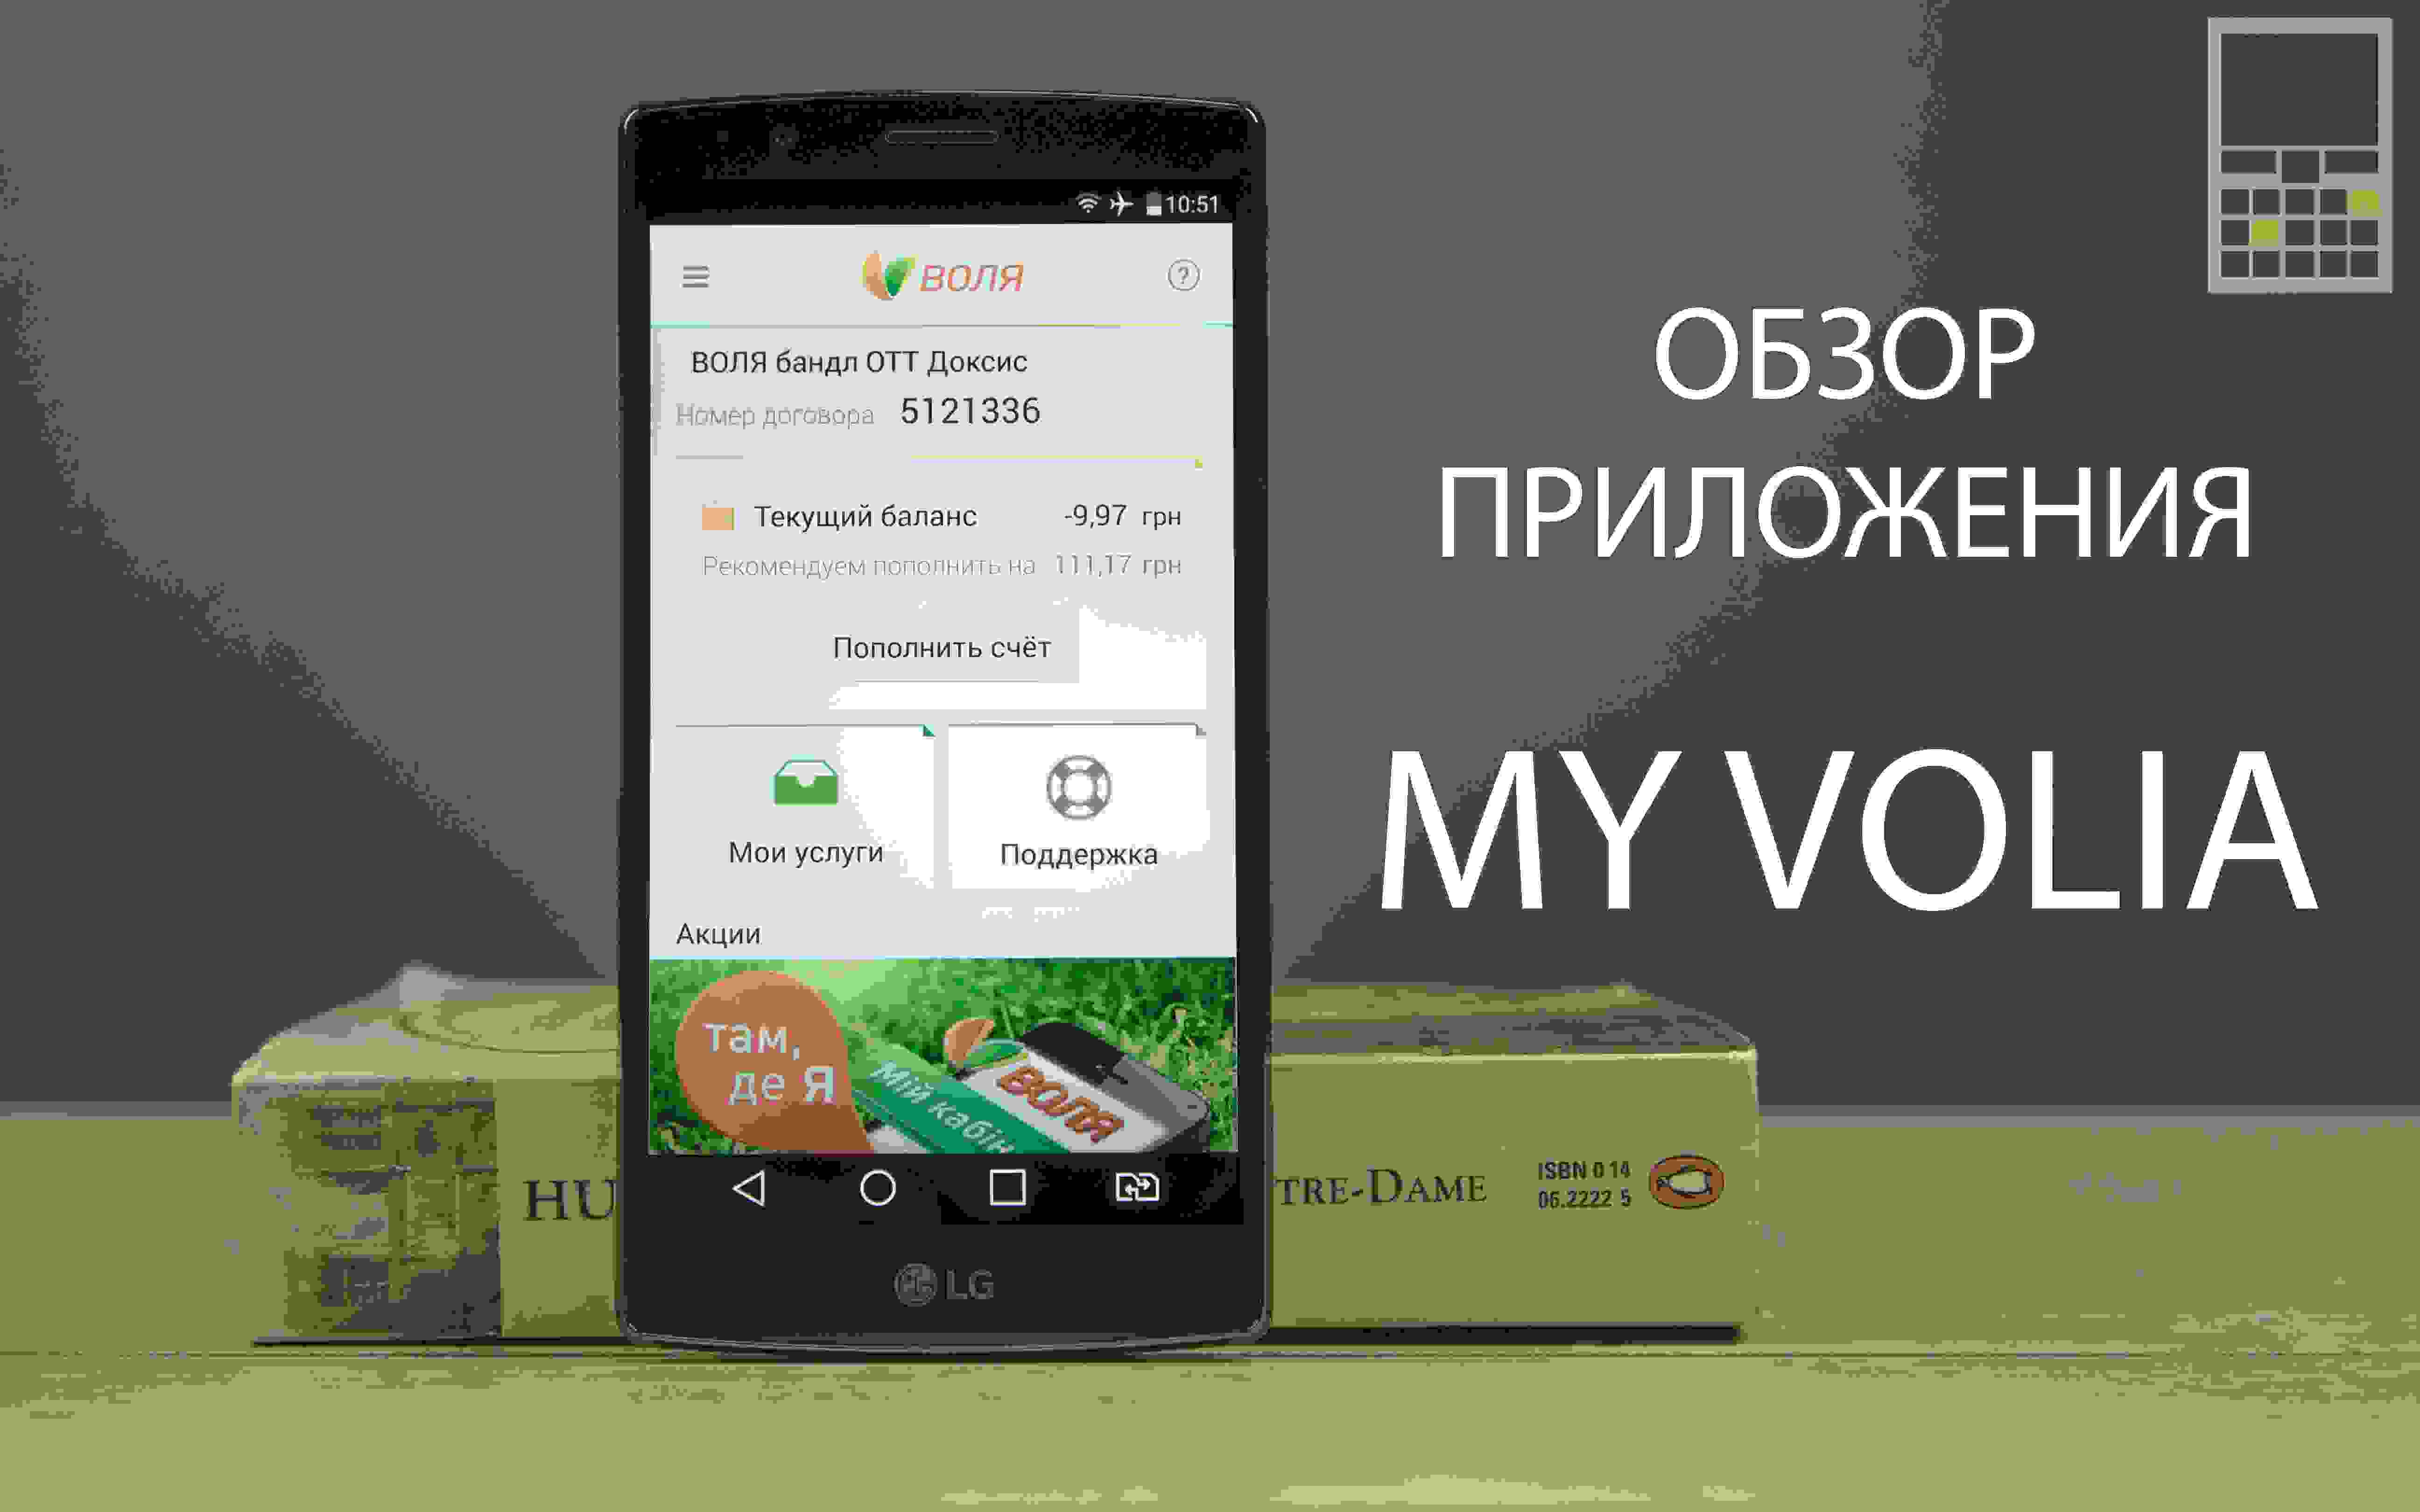 My Volia – приложение, которое должен установить каждый абонент ВОЛИ